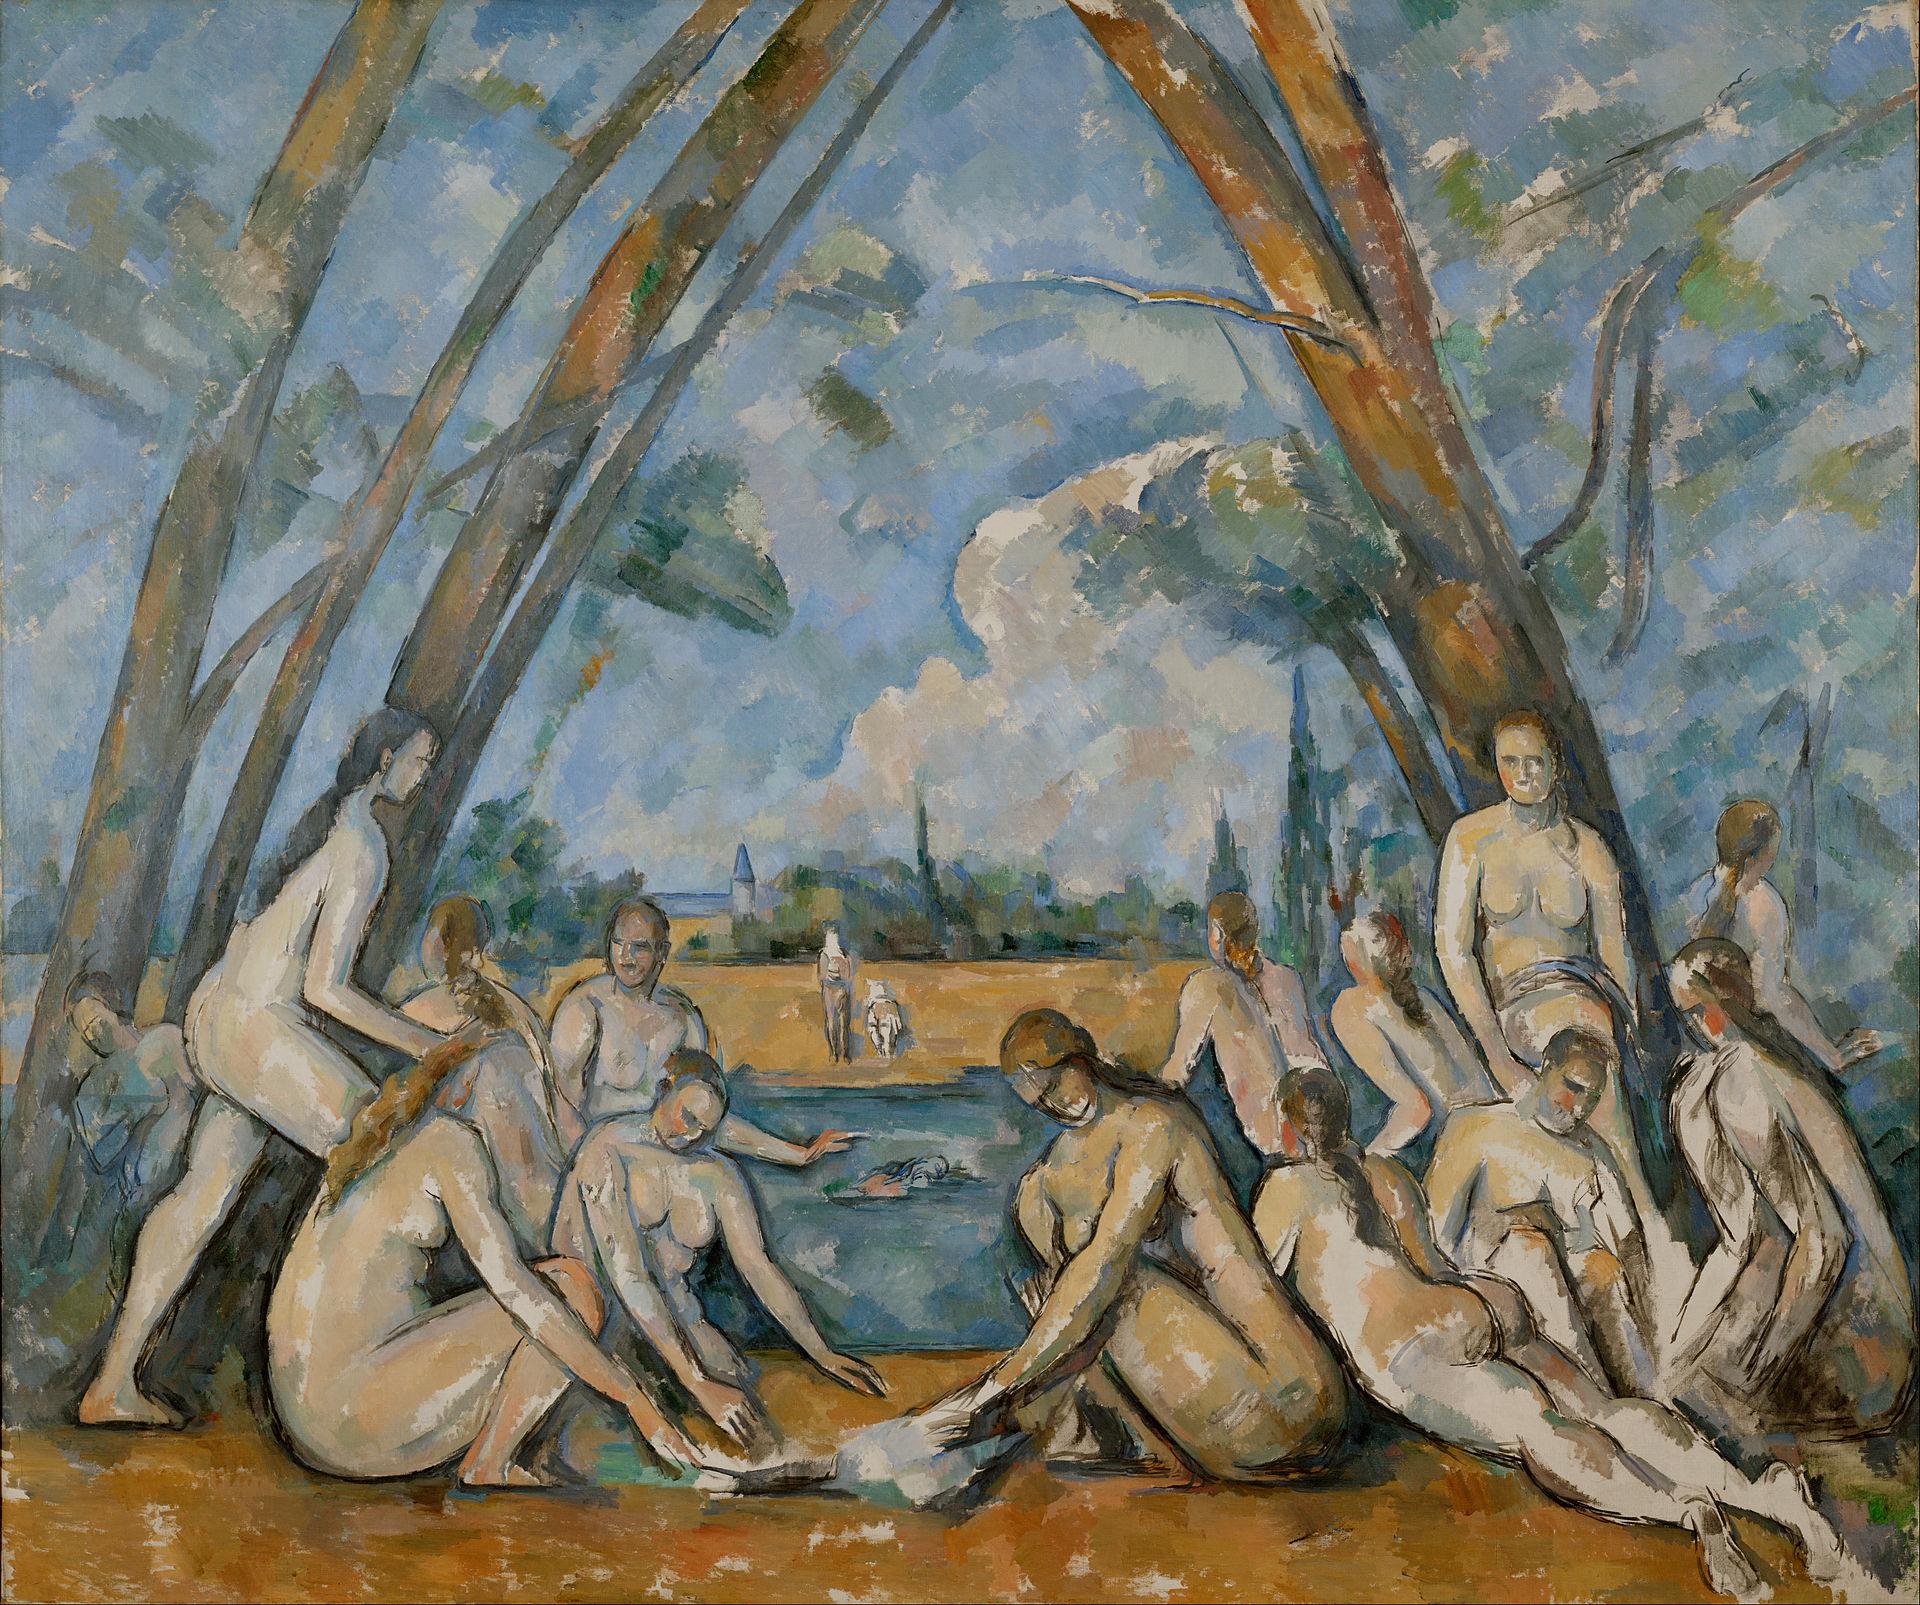 Paul Cézanne’s 1906 Les Grandes Baigneuses